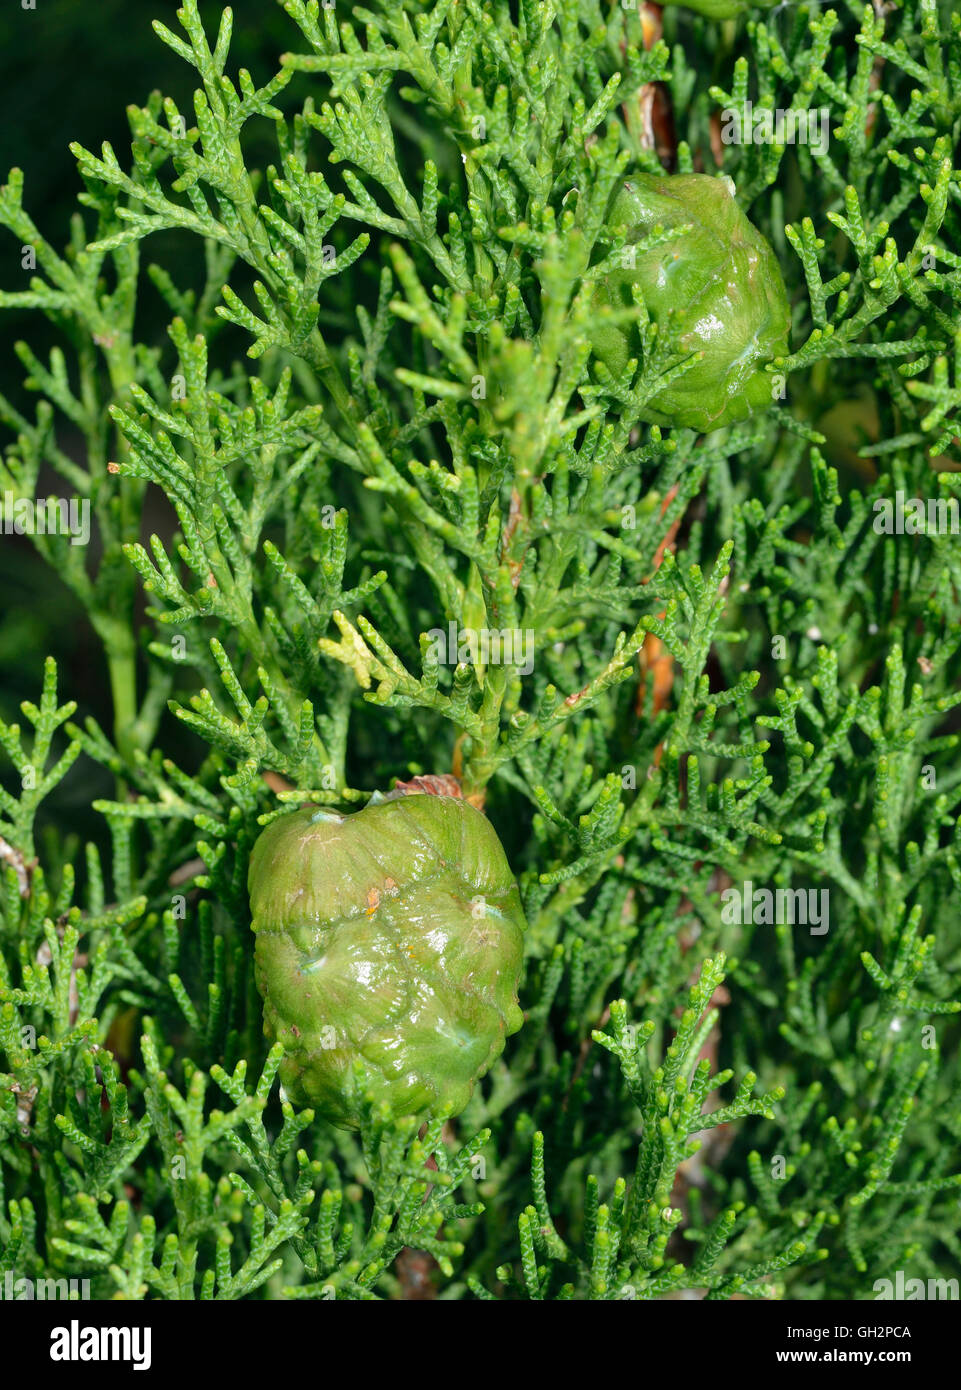 Cyprès - Cupressus sempervirens Méditerranée nouveaux cônes verts Banque D'Images